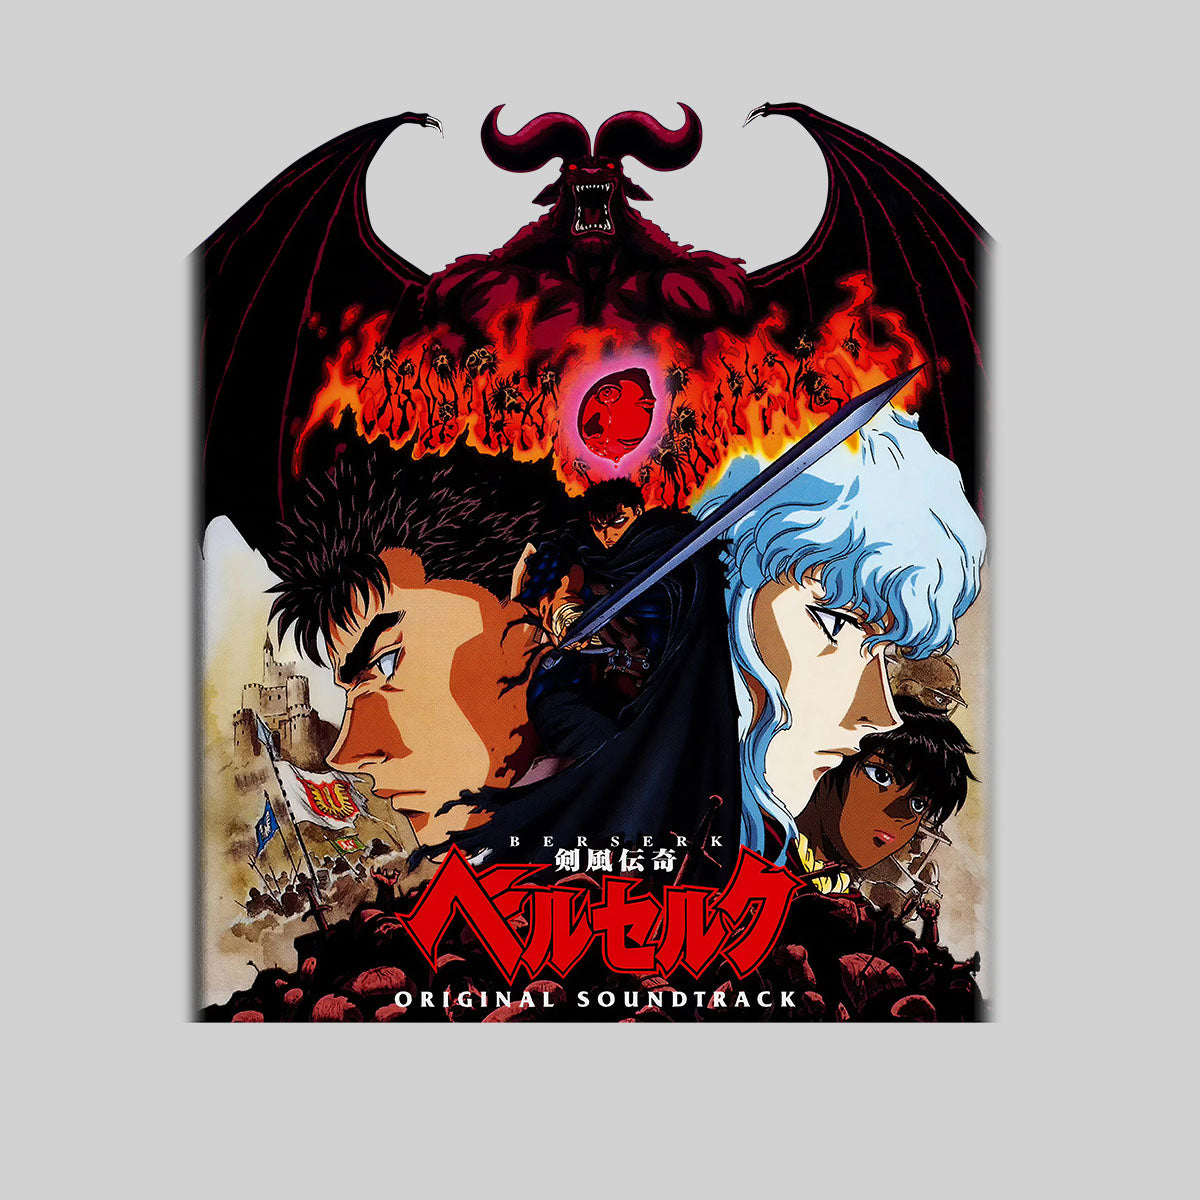 Berserk Original Soundtrack Japanese Anime Manga Adult Unisex Tee